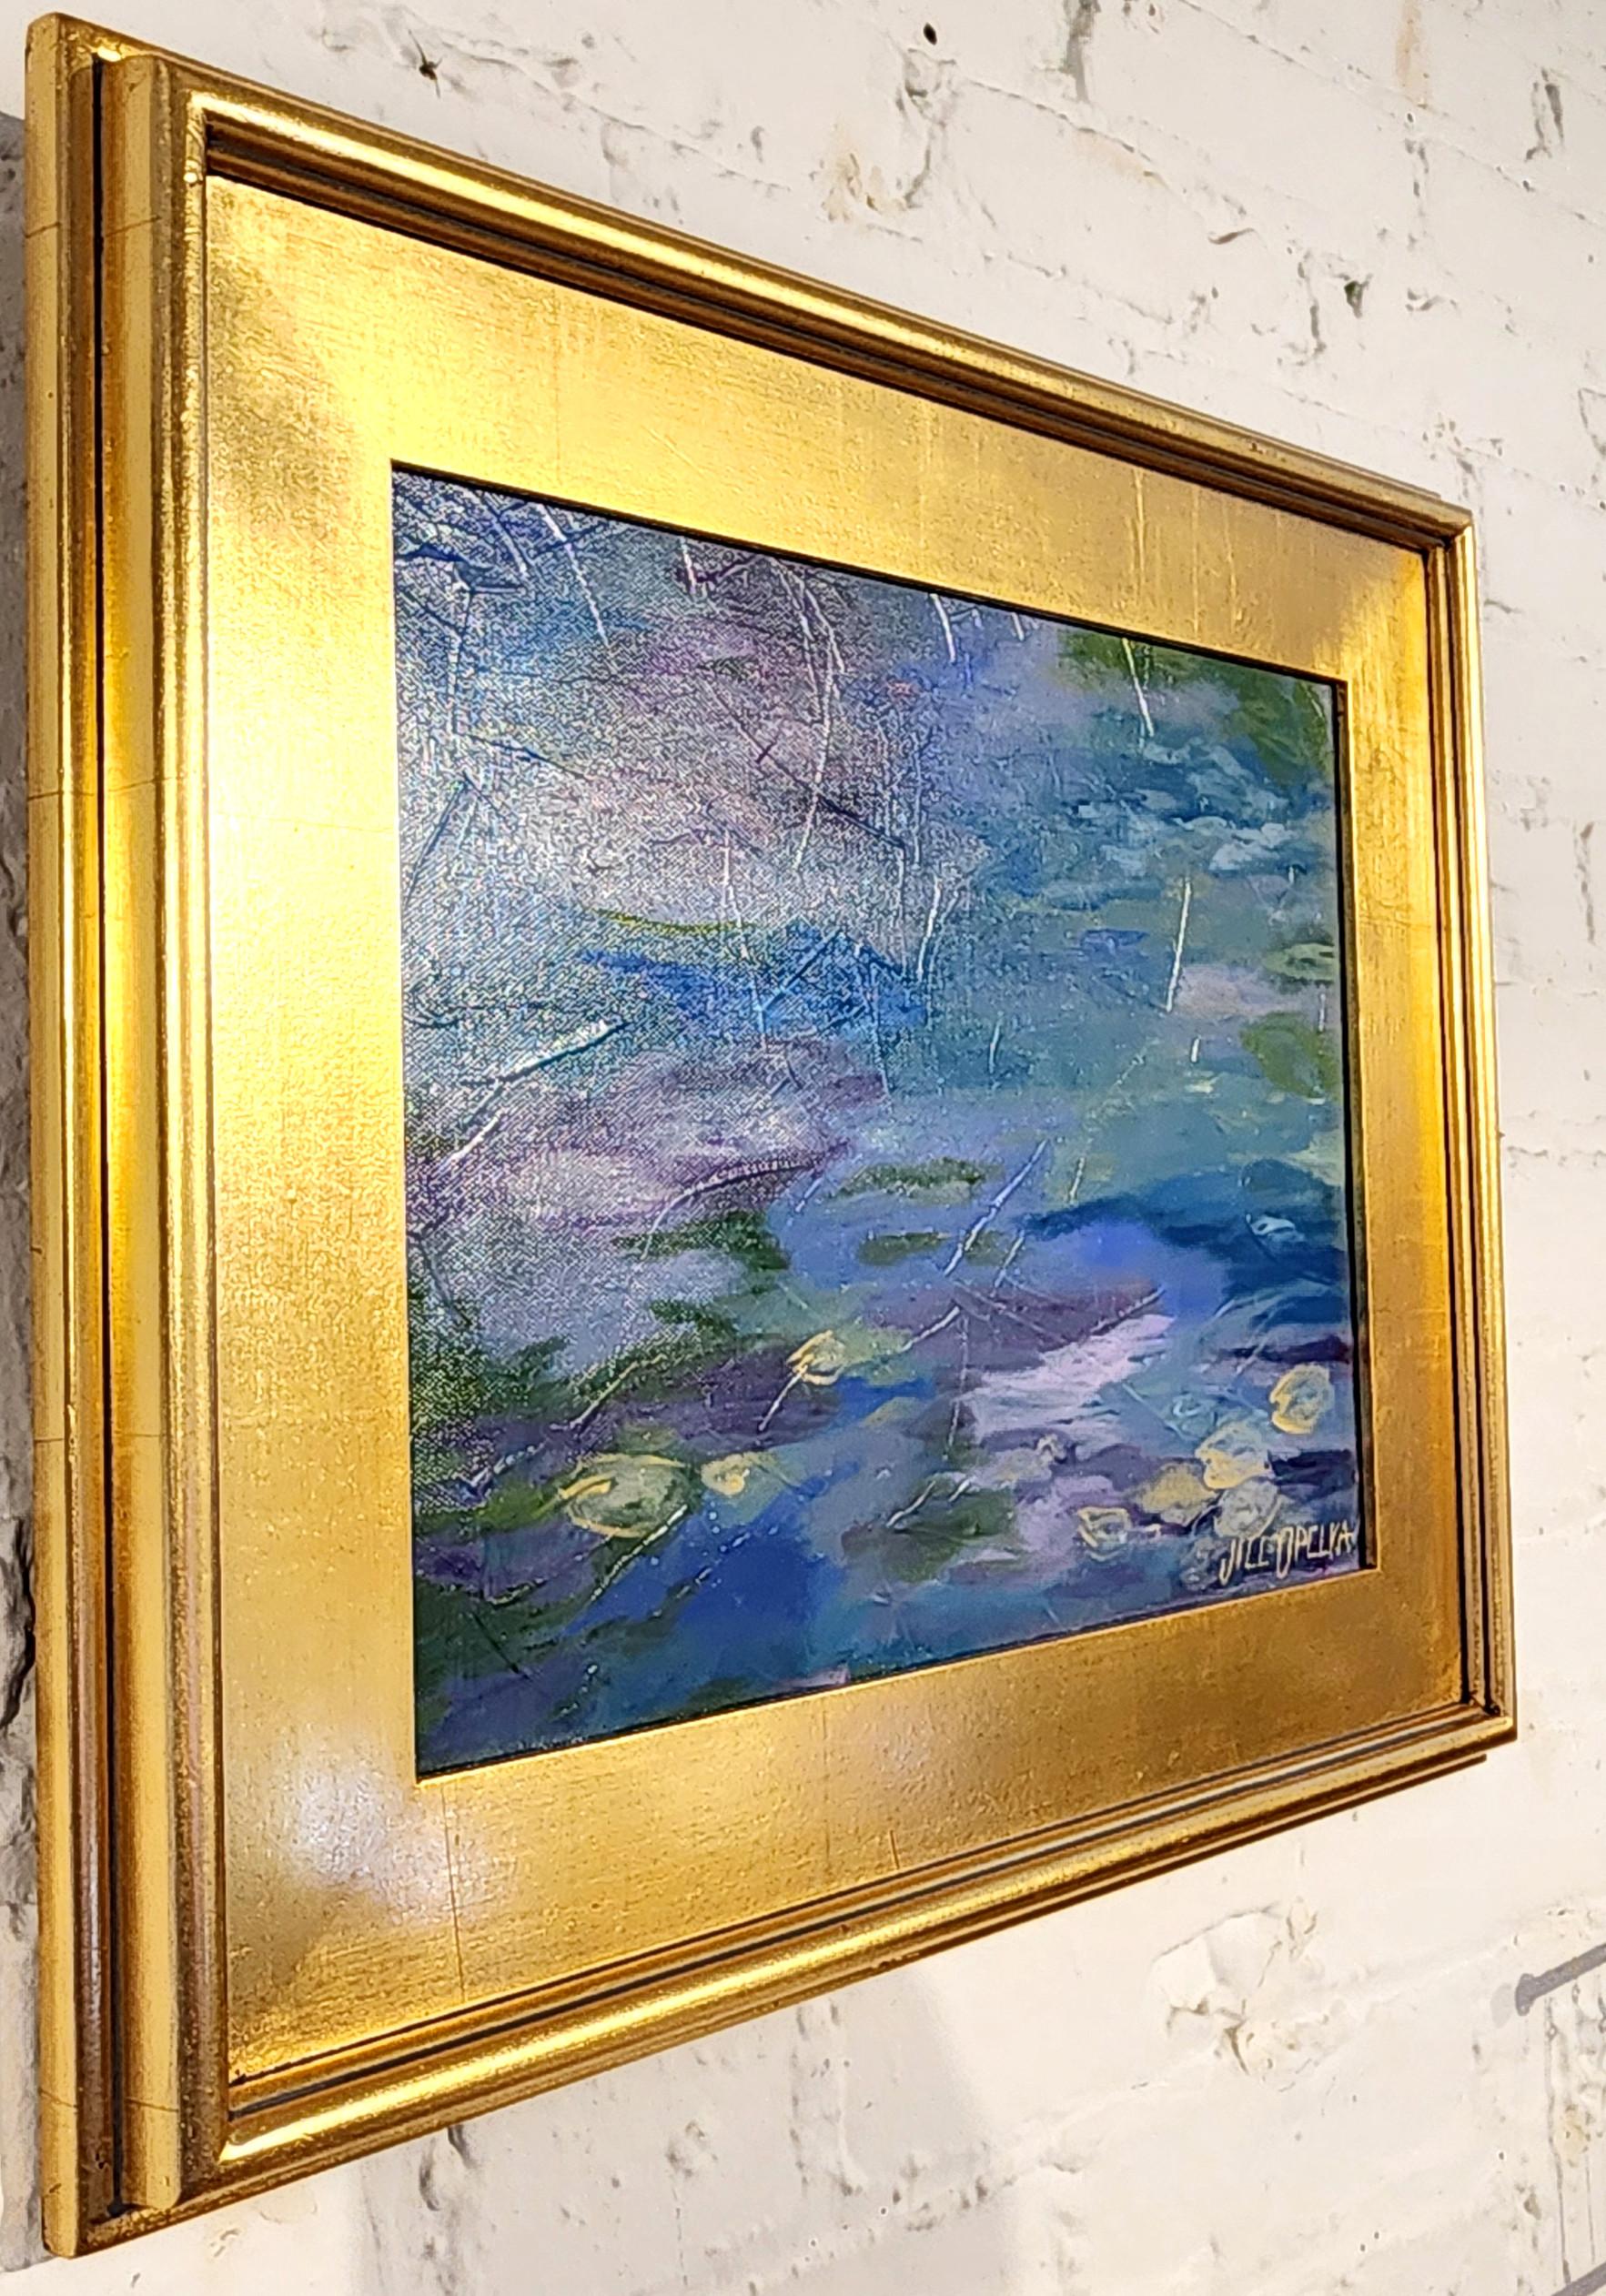 Lily Pond (Flowers, Wasserlandschaft, Pastell, Wärme) (Impressionismus), Painting, von Jill Opelka